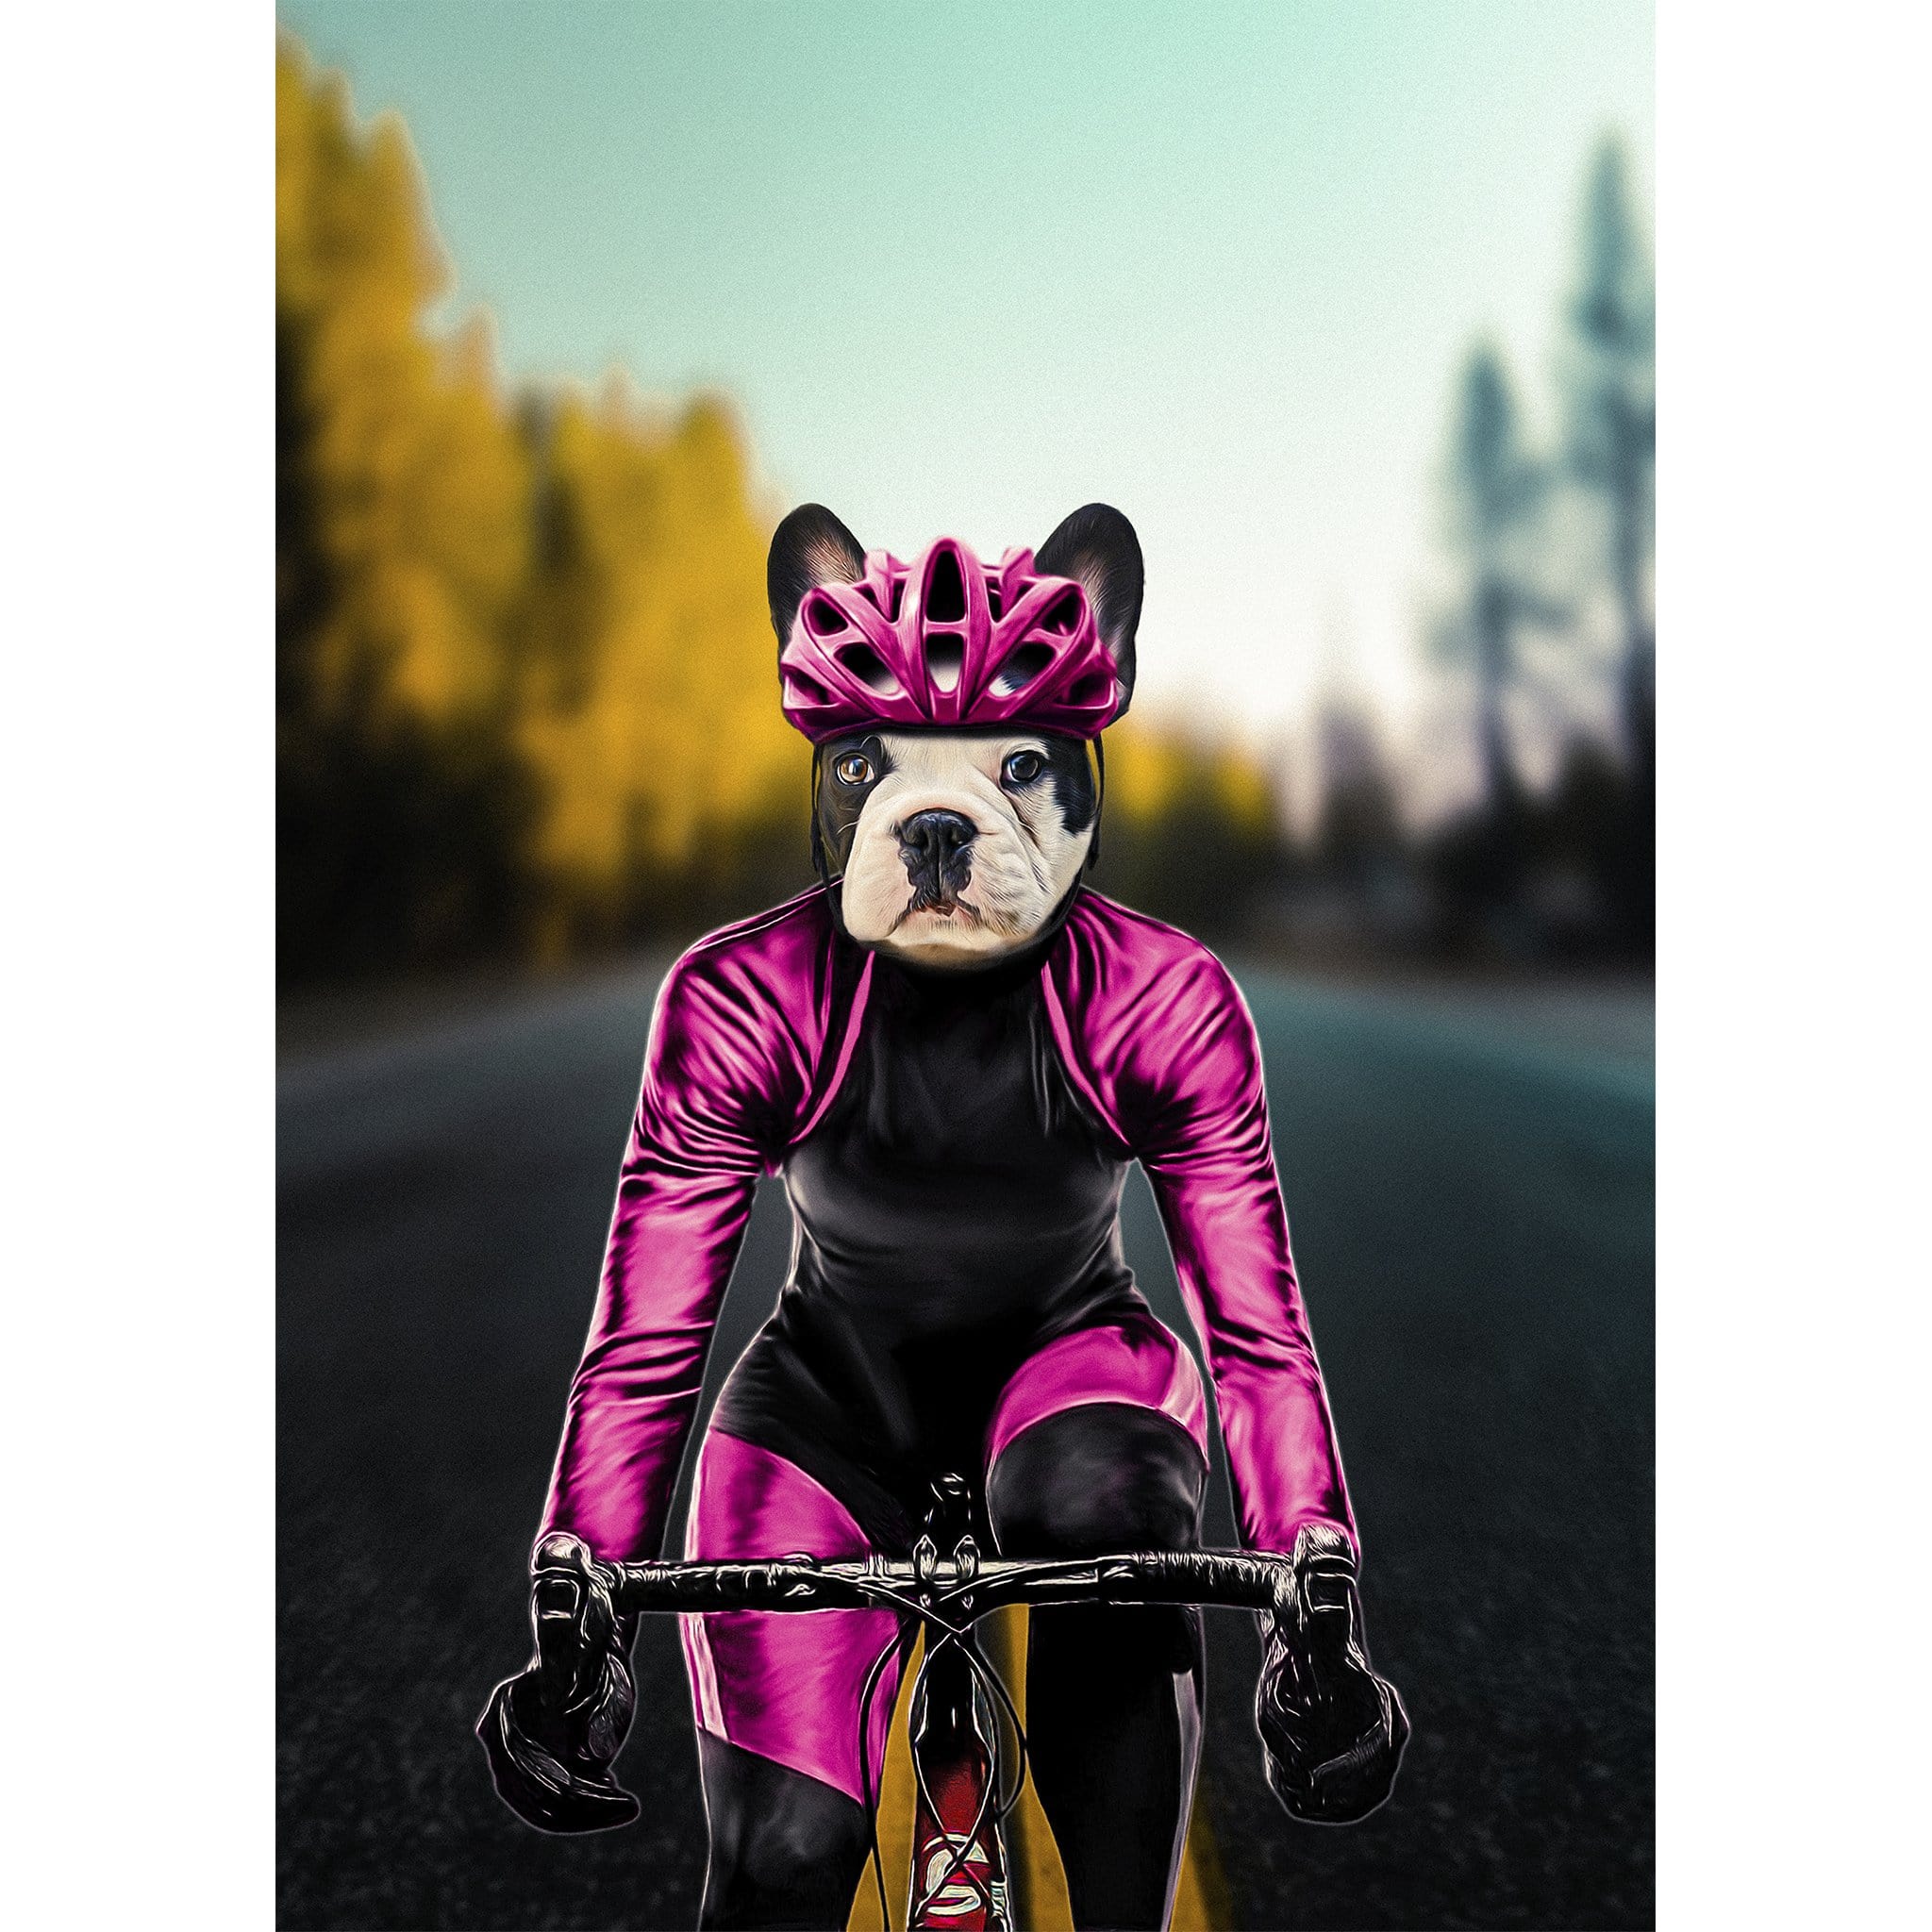 'The Female Cyclist' Digital Portrait